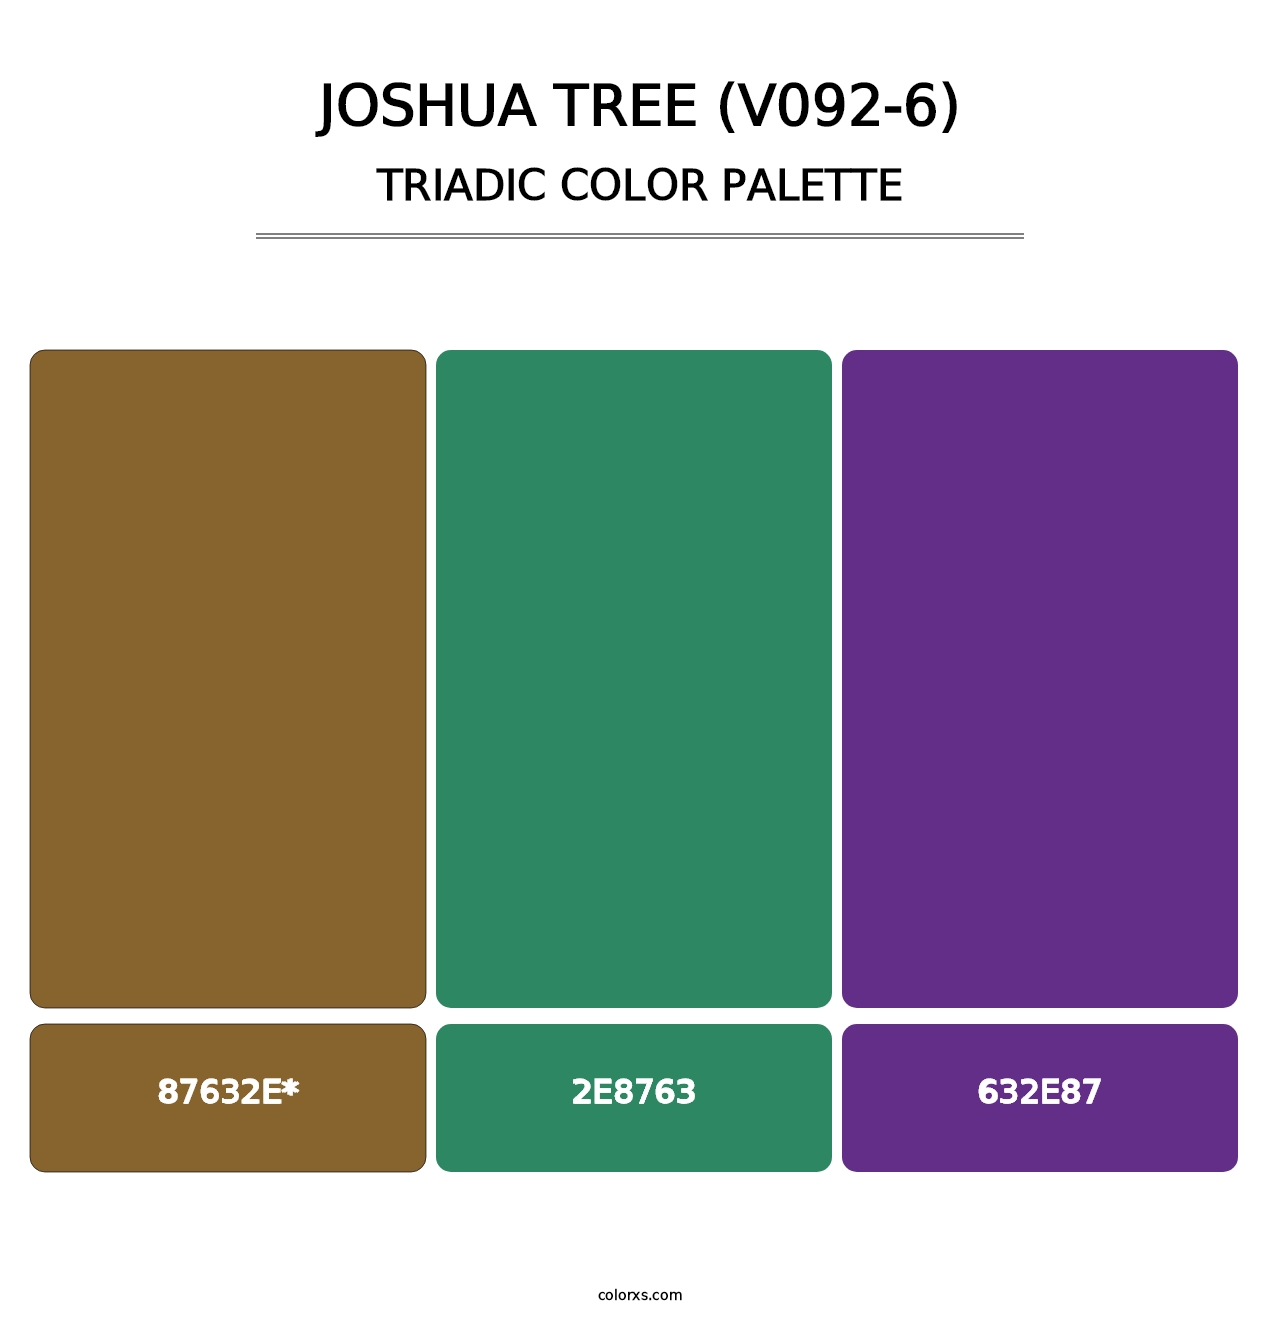 Joshua Tree (V092-6) - Triadic Color Palette